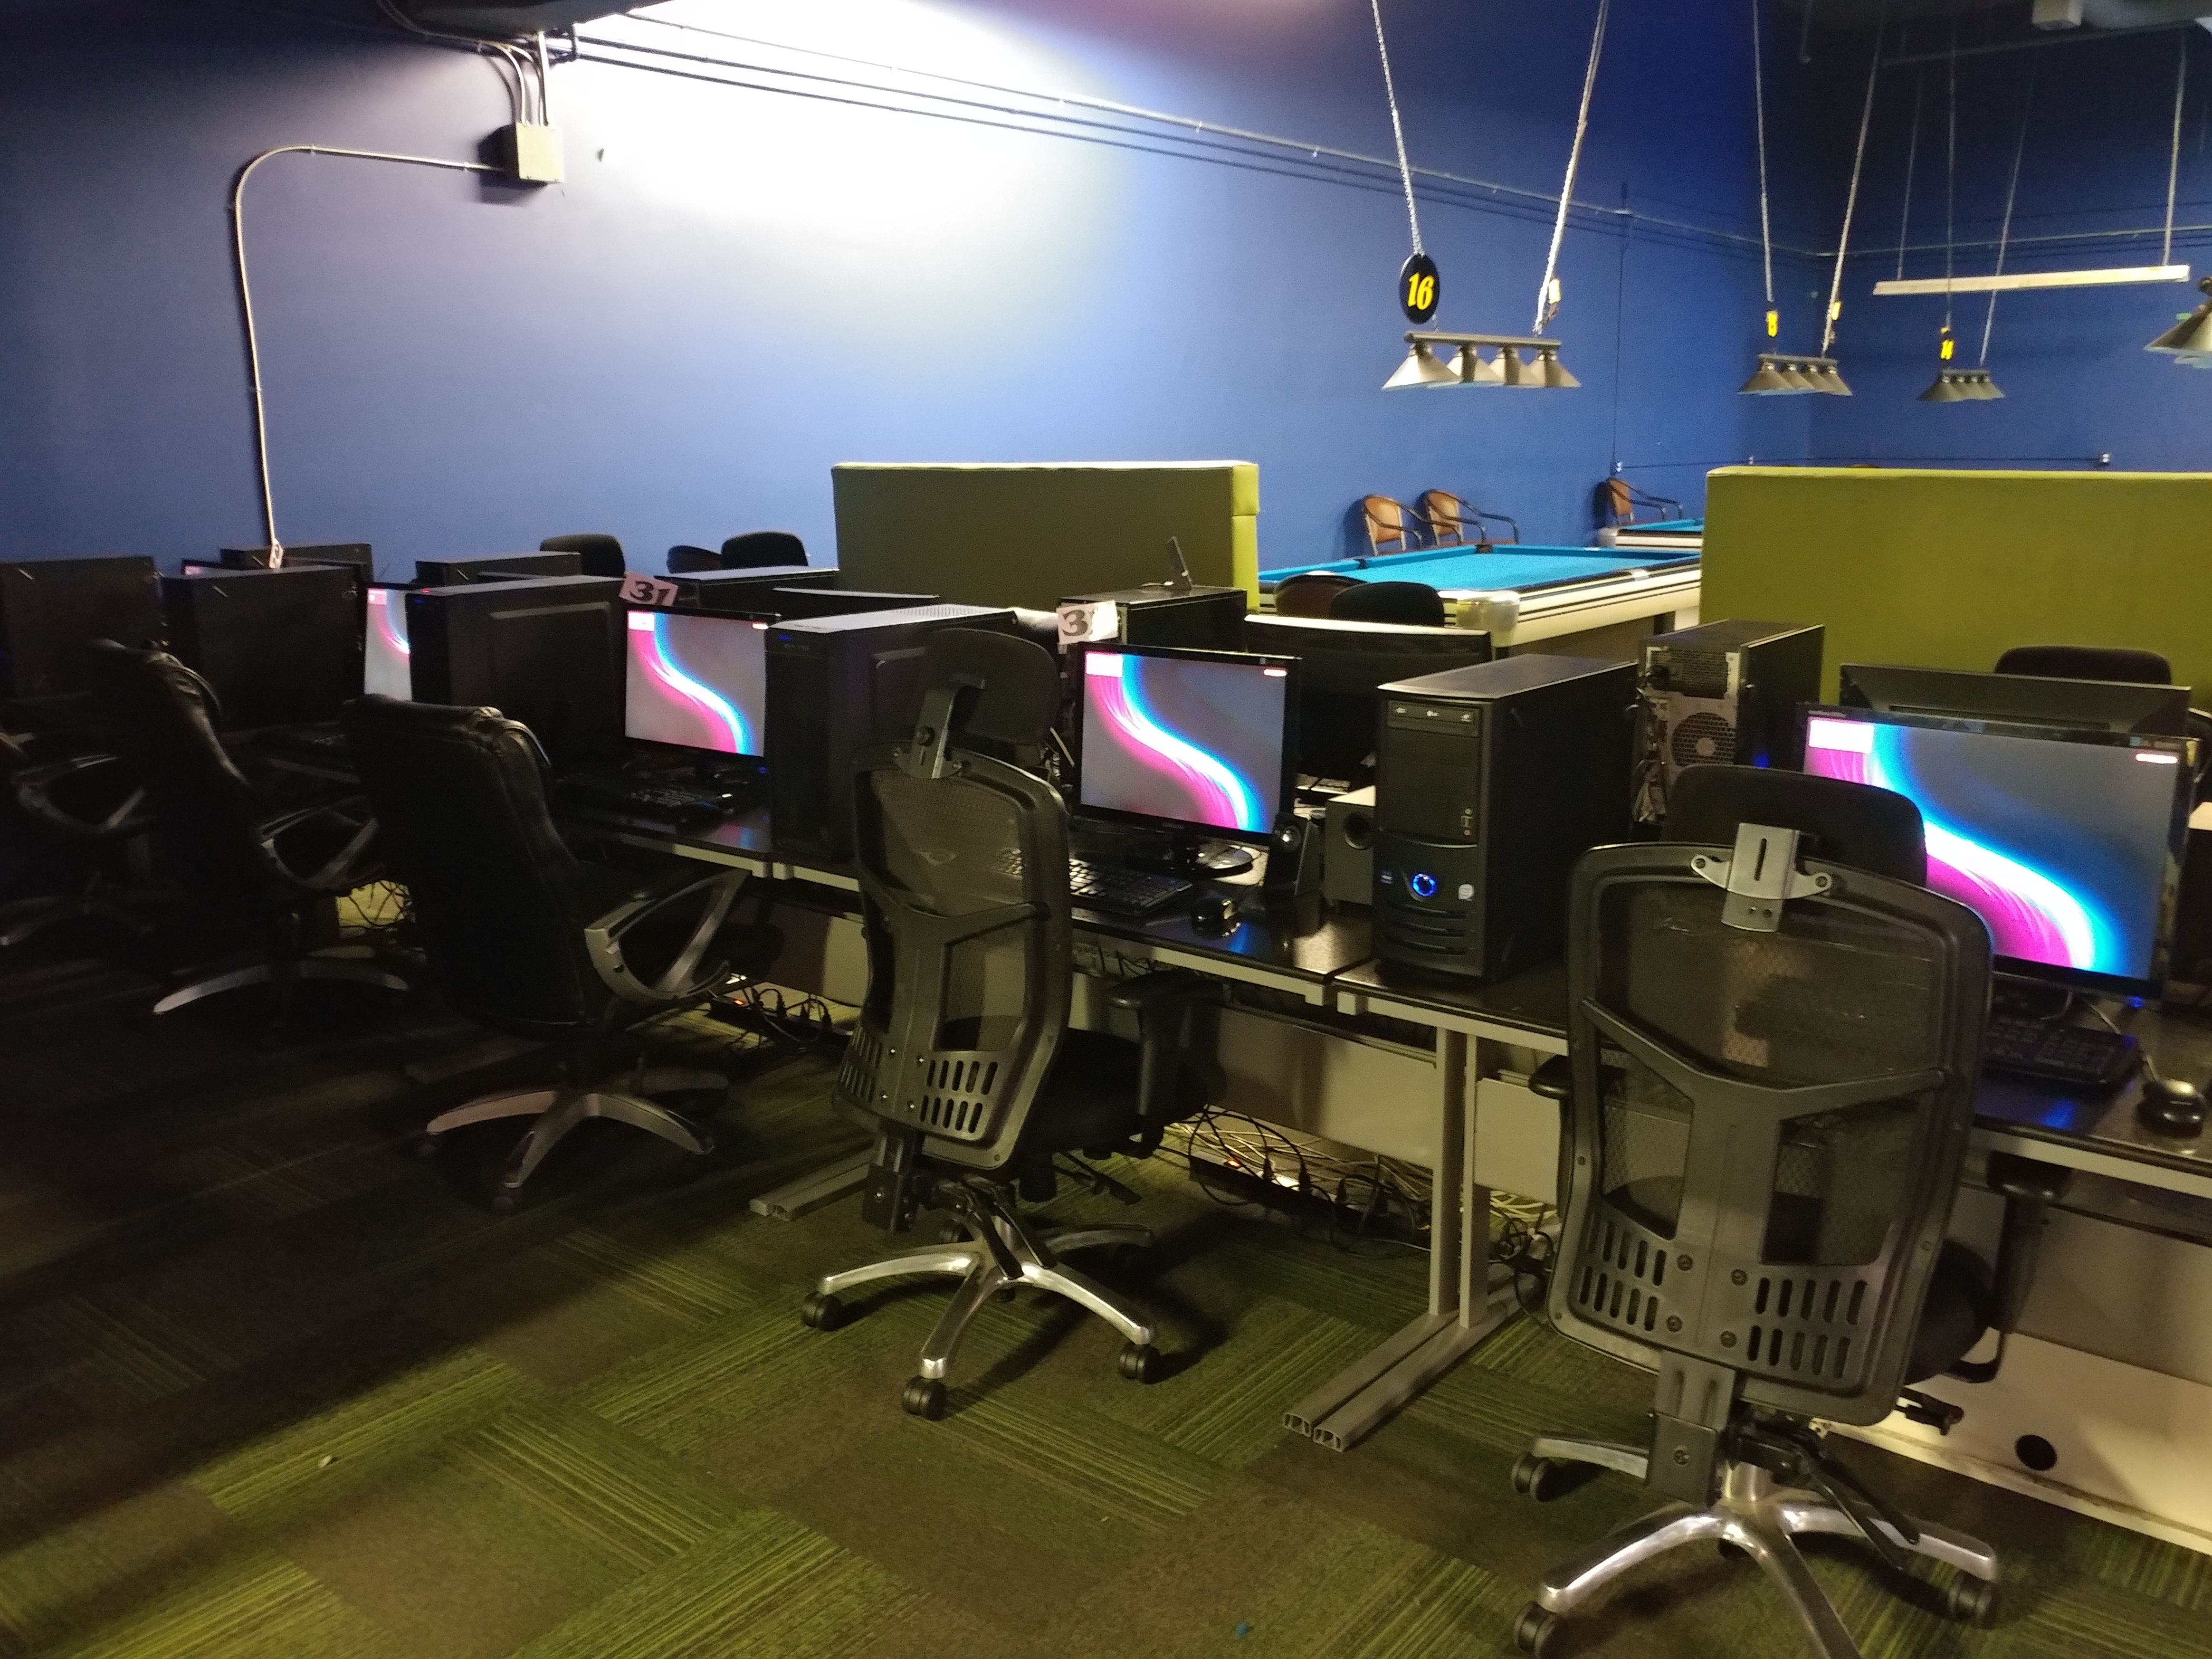 LAN gaming centre setup